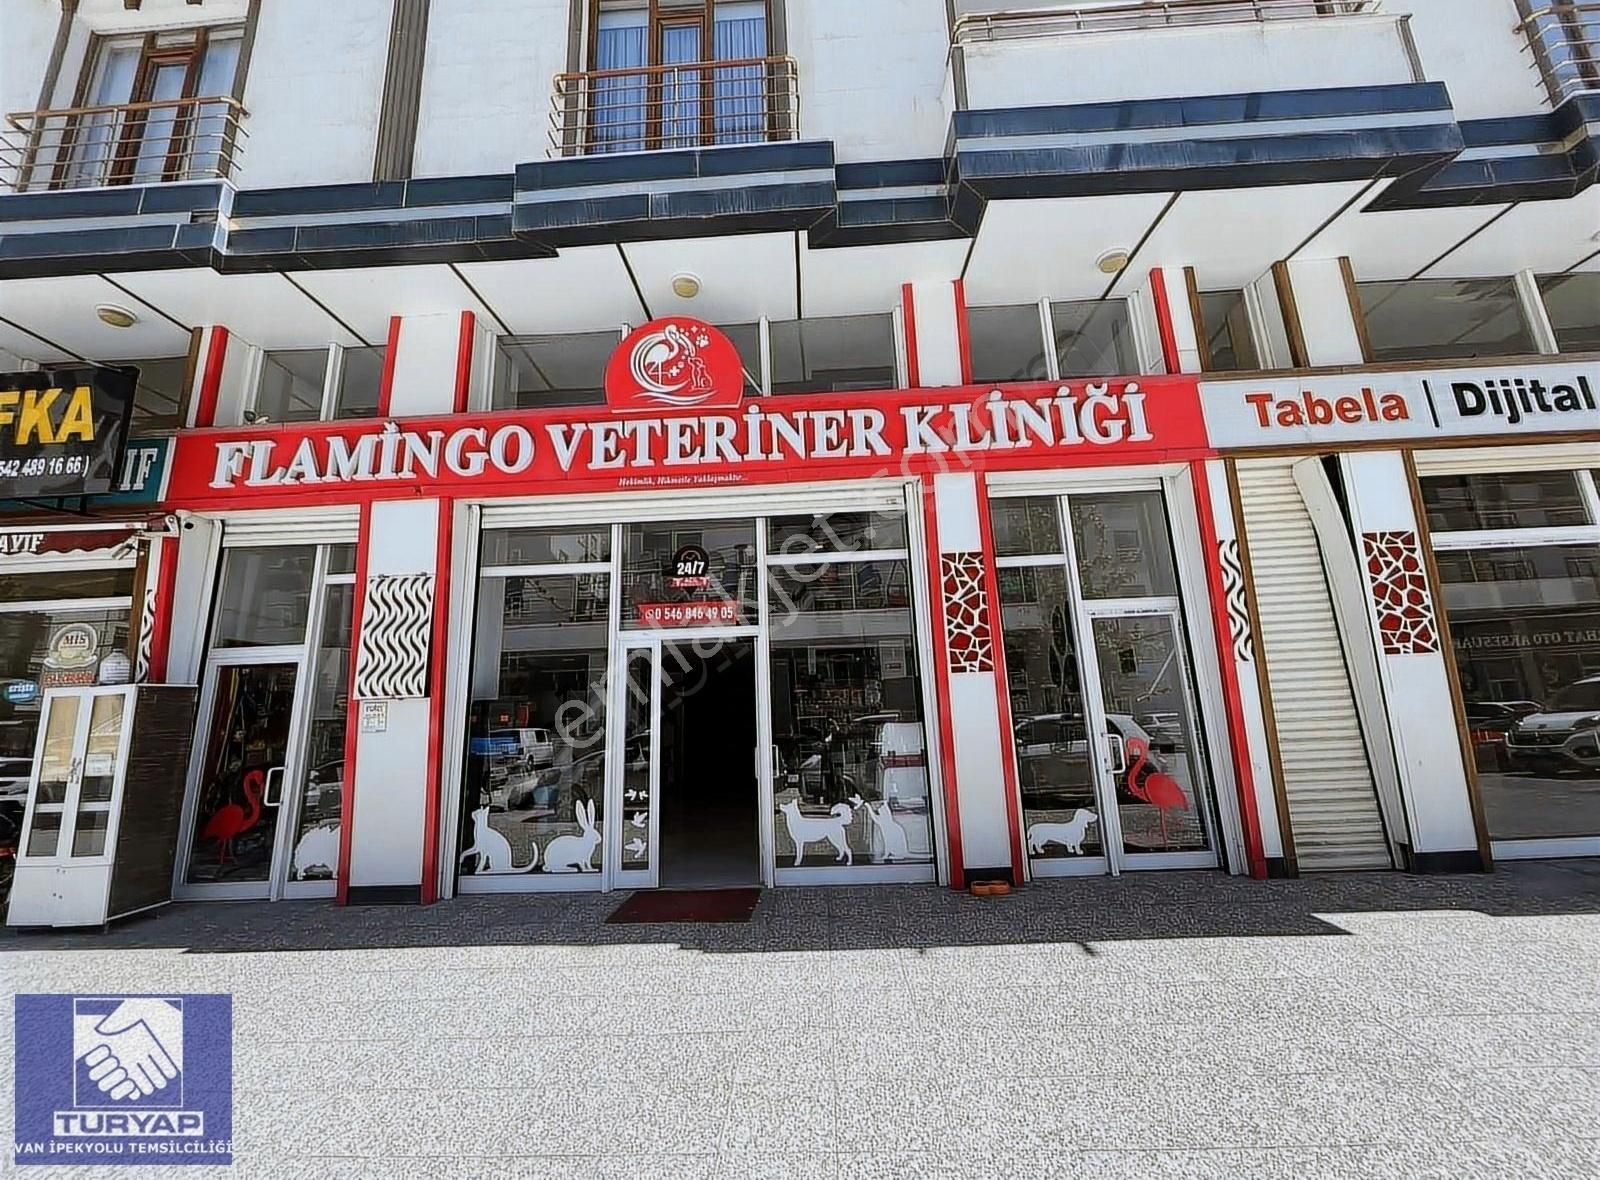 İpekyolu Vali Mithat Bey Satılık Dükkan & Mağaza TURYAP'TAN ALİPAŞA 'DA SATILIK DÜKKAN